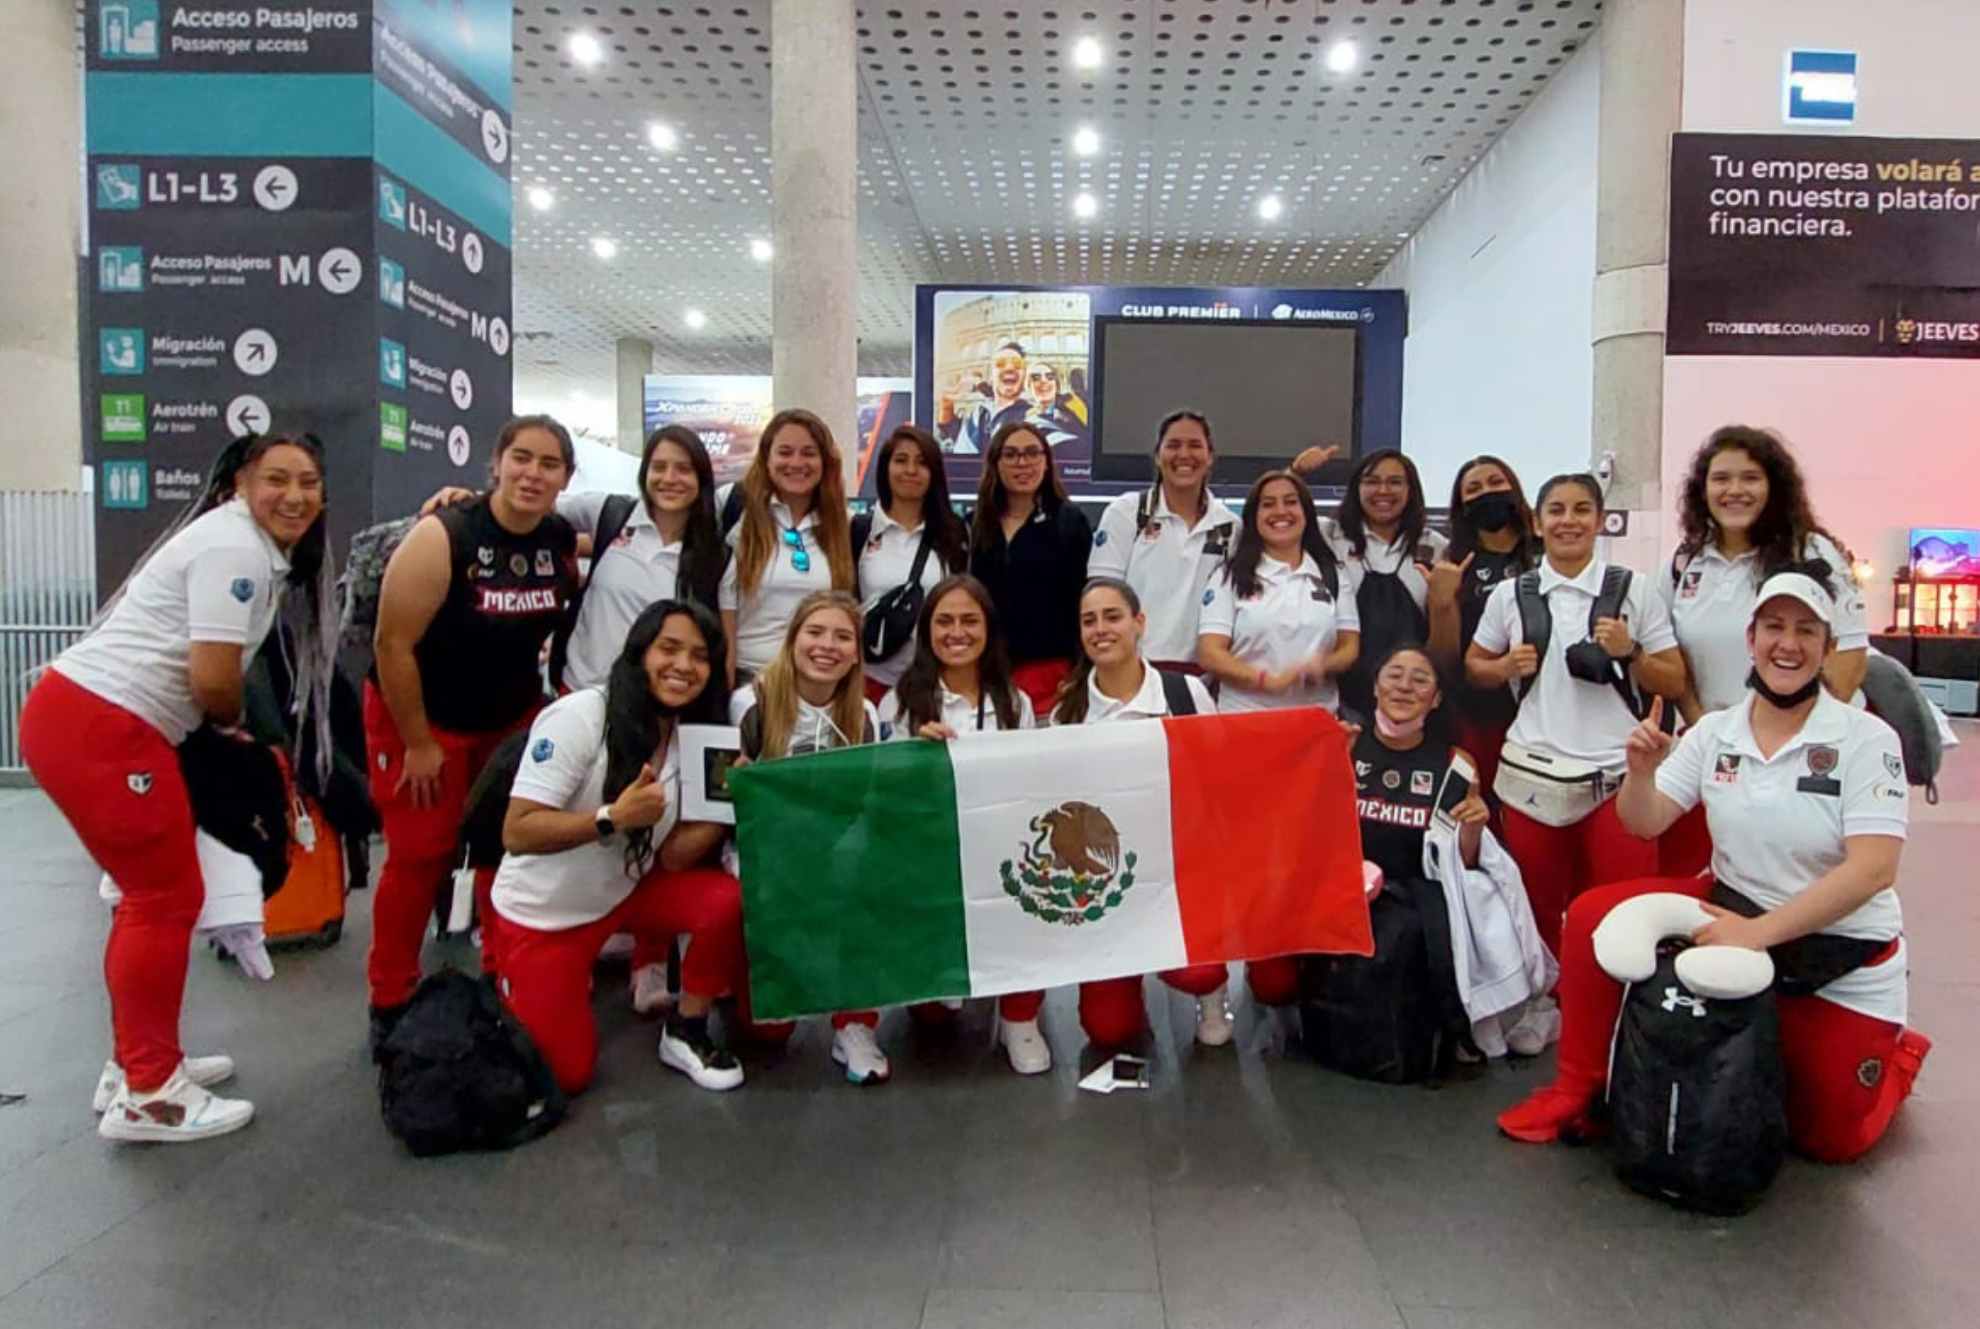 El equipo mexicano busca el mejor lugar luego de perder chance de medalla | @FMFAOFICIALMX